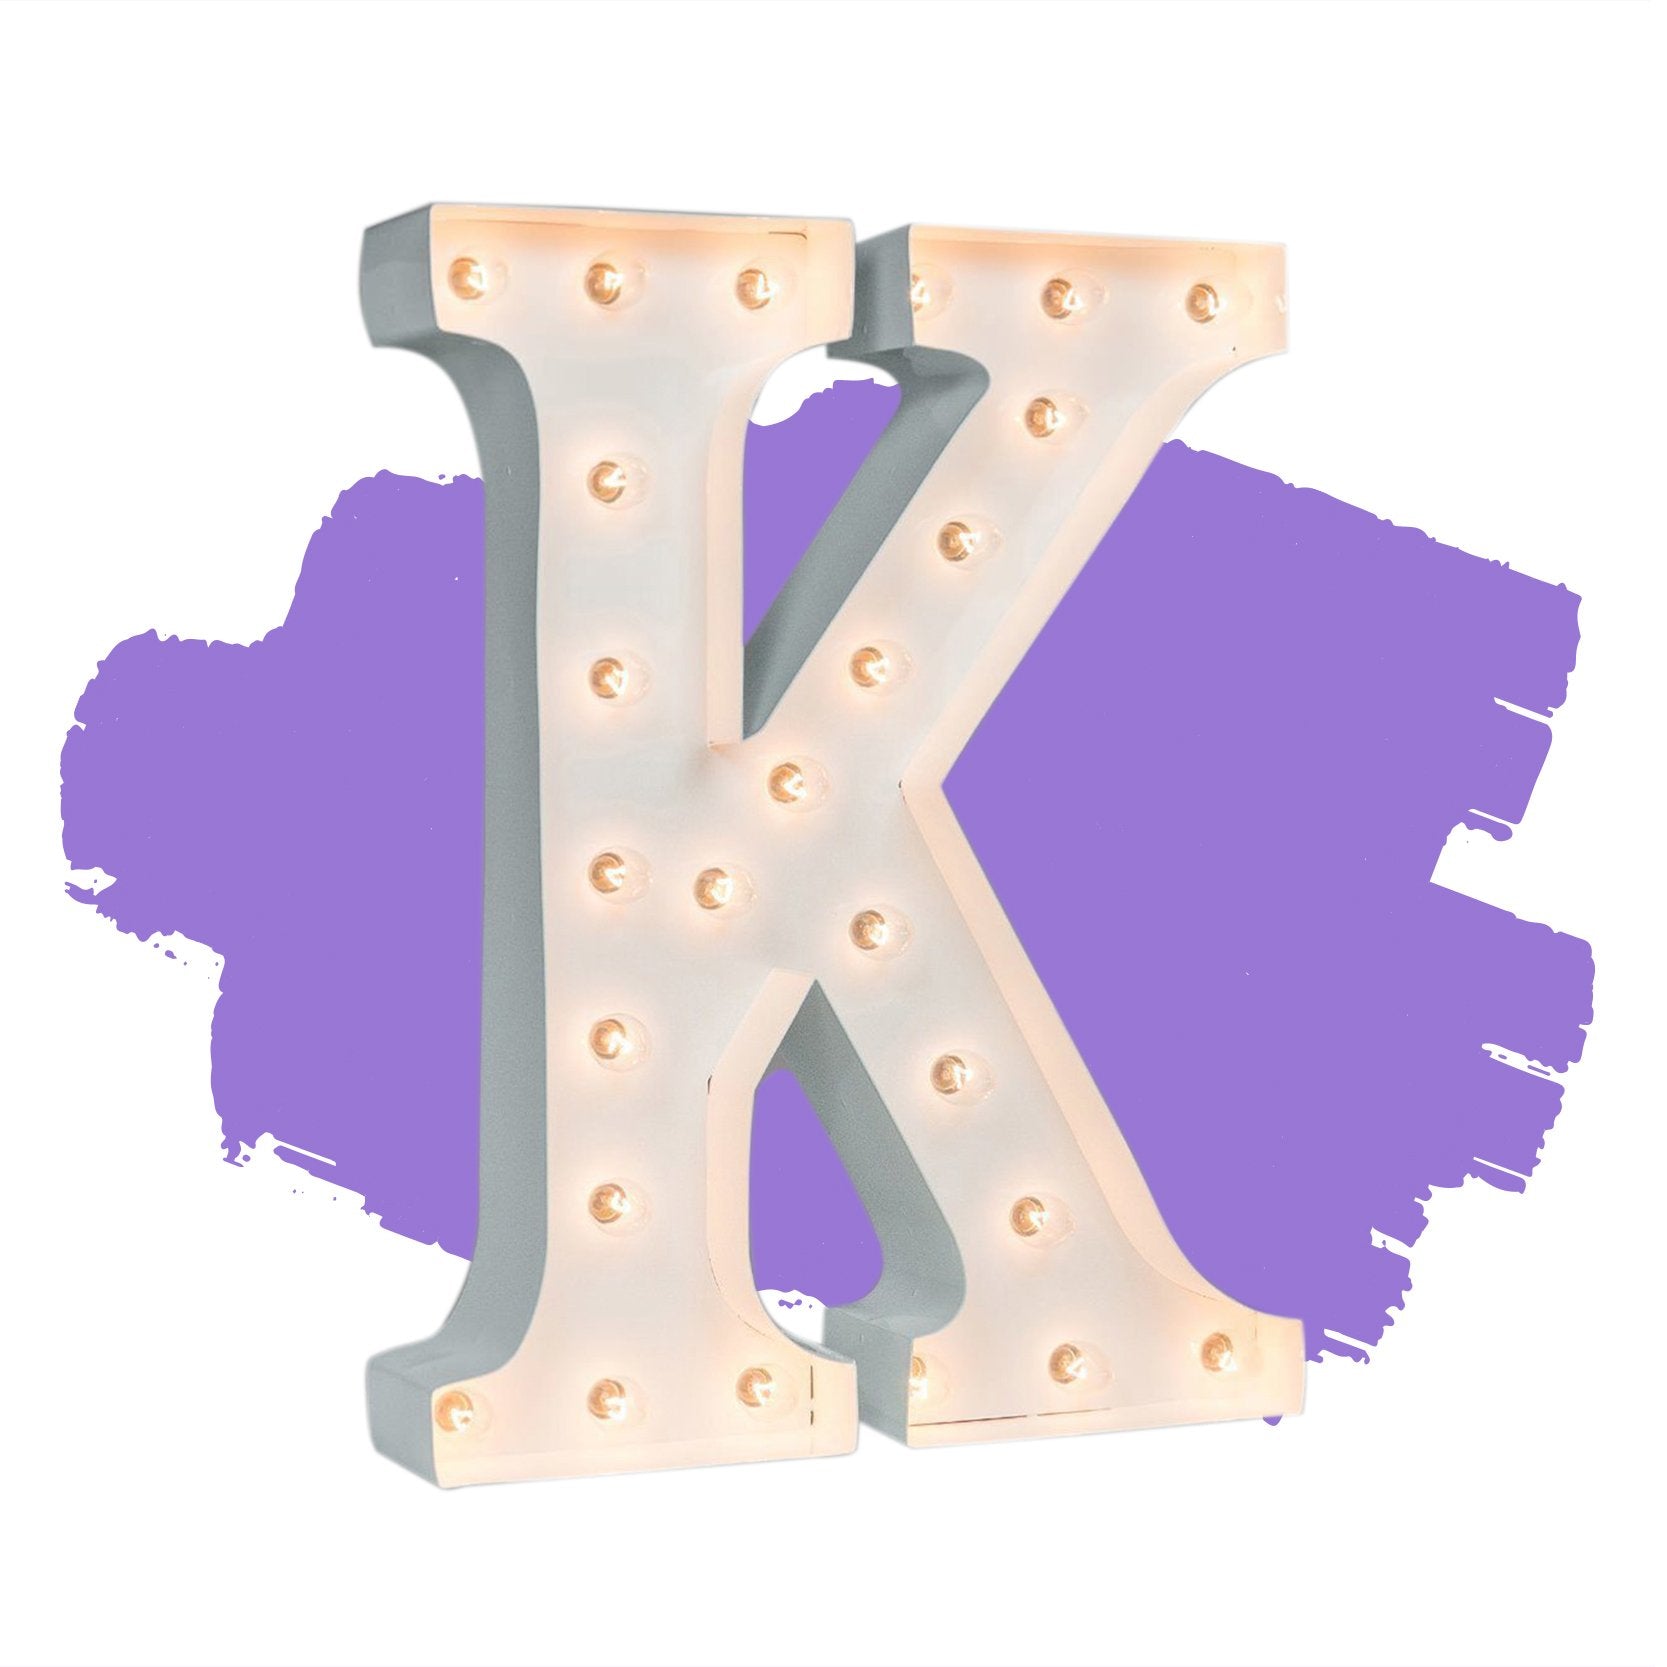 purple letter k